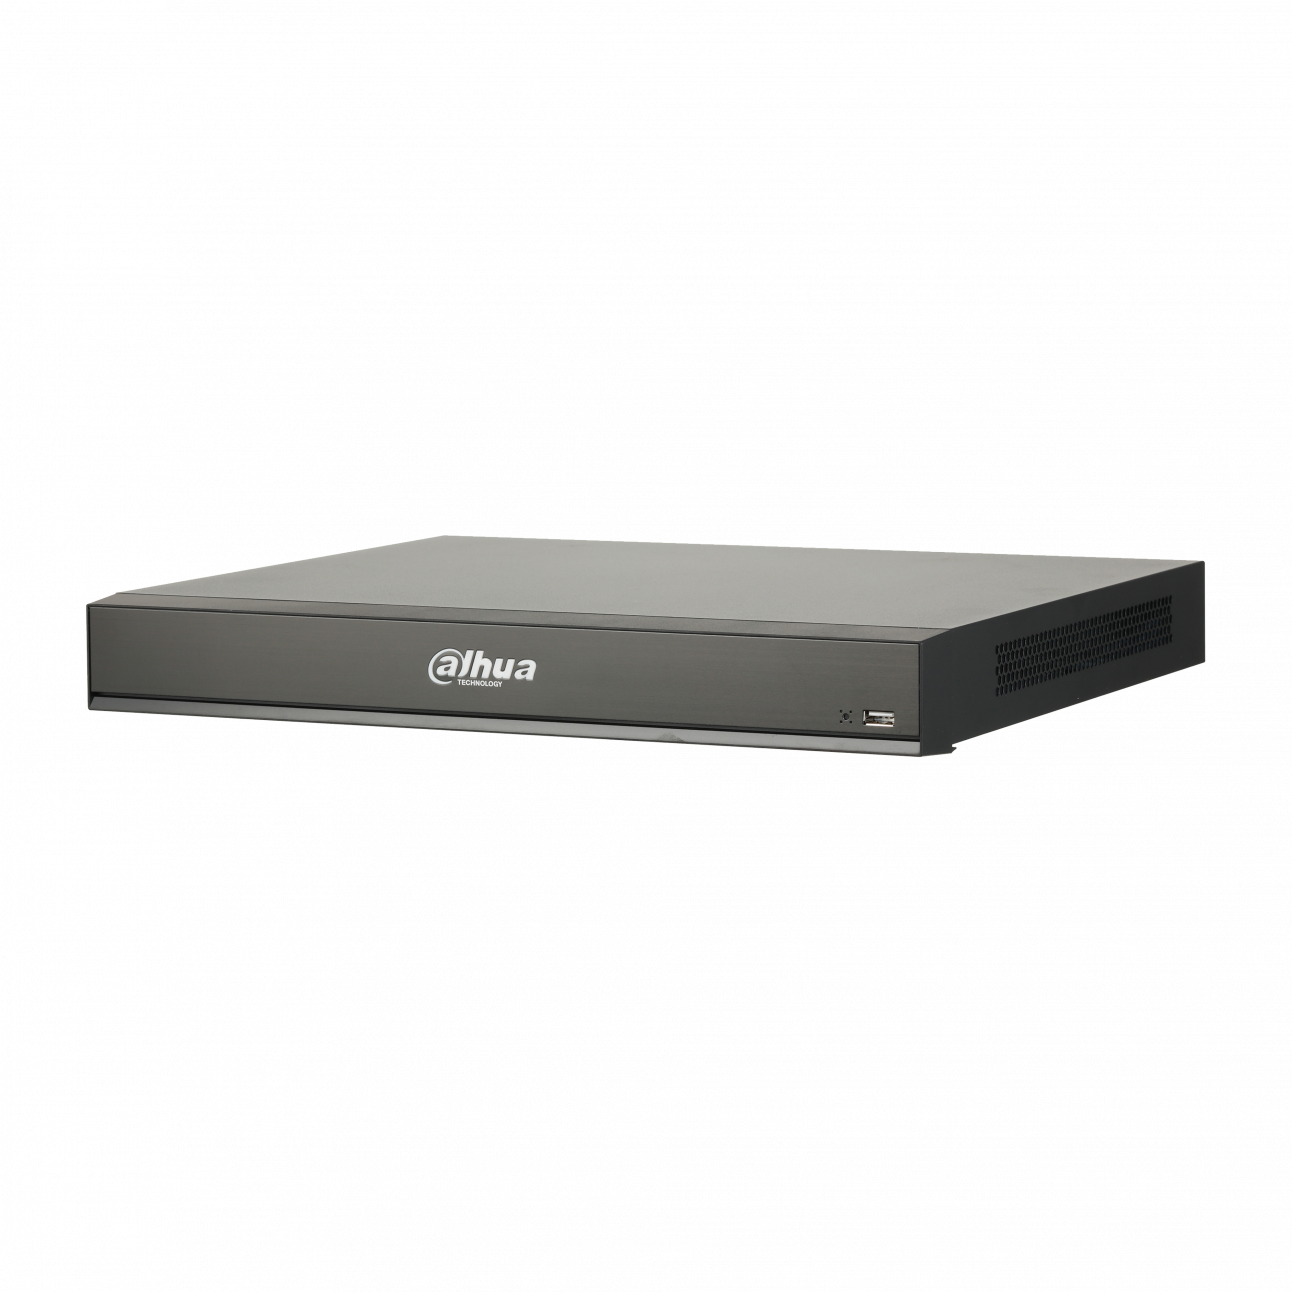 IP Видеорегистратор Dahua DHI-NVR5216-16P-I 16-и канальный 4K, 16 PoE портов, до 16Мп, 2 HDD до 8Тб, HDMI, VGA, 1 порт USB2.0, 1 порт USB3.0